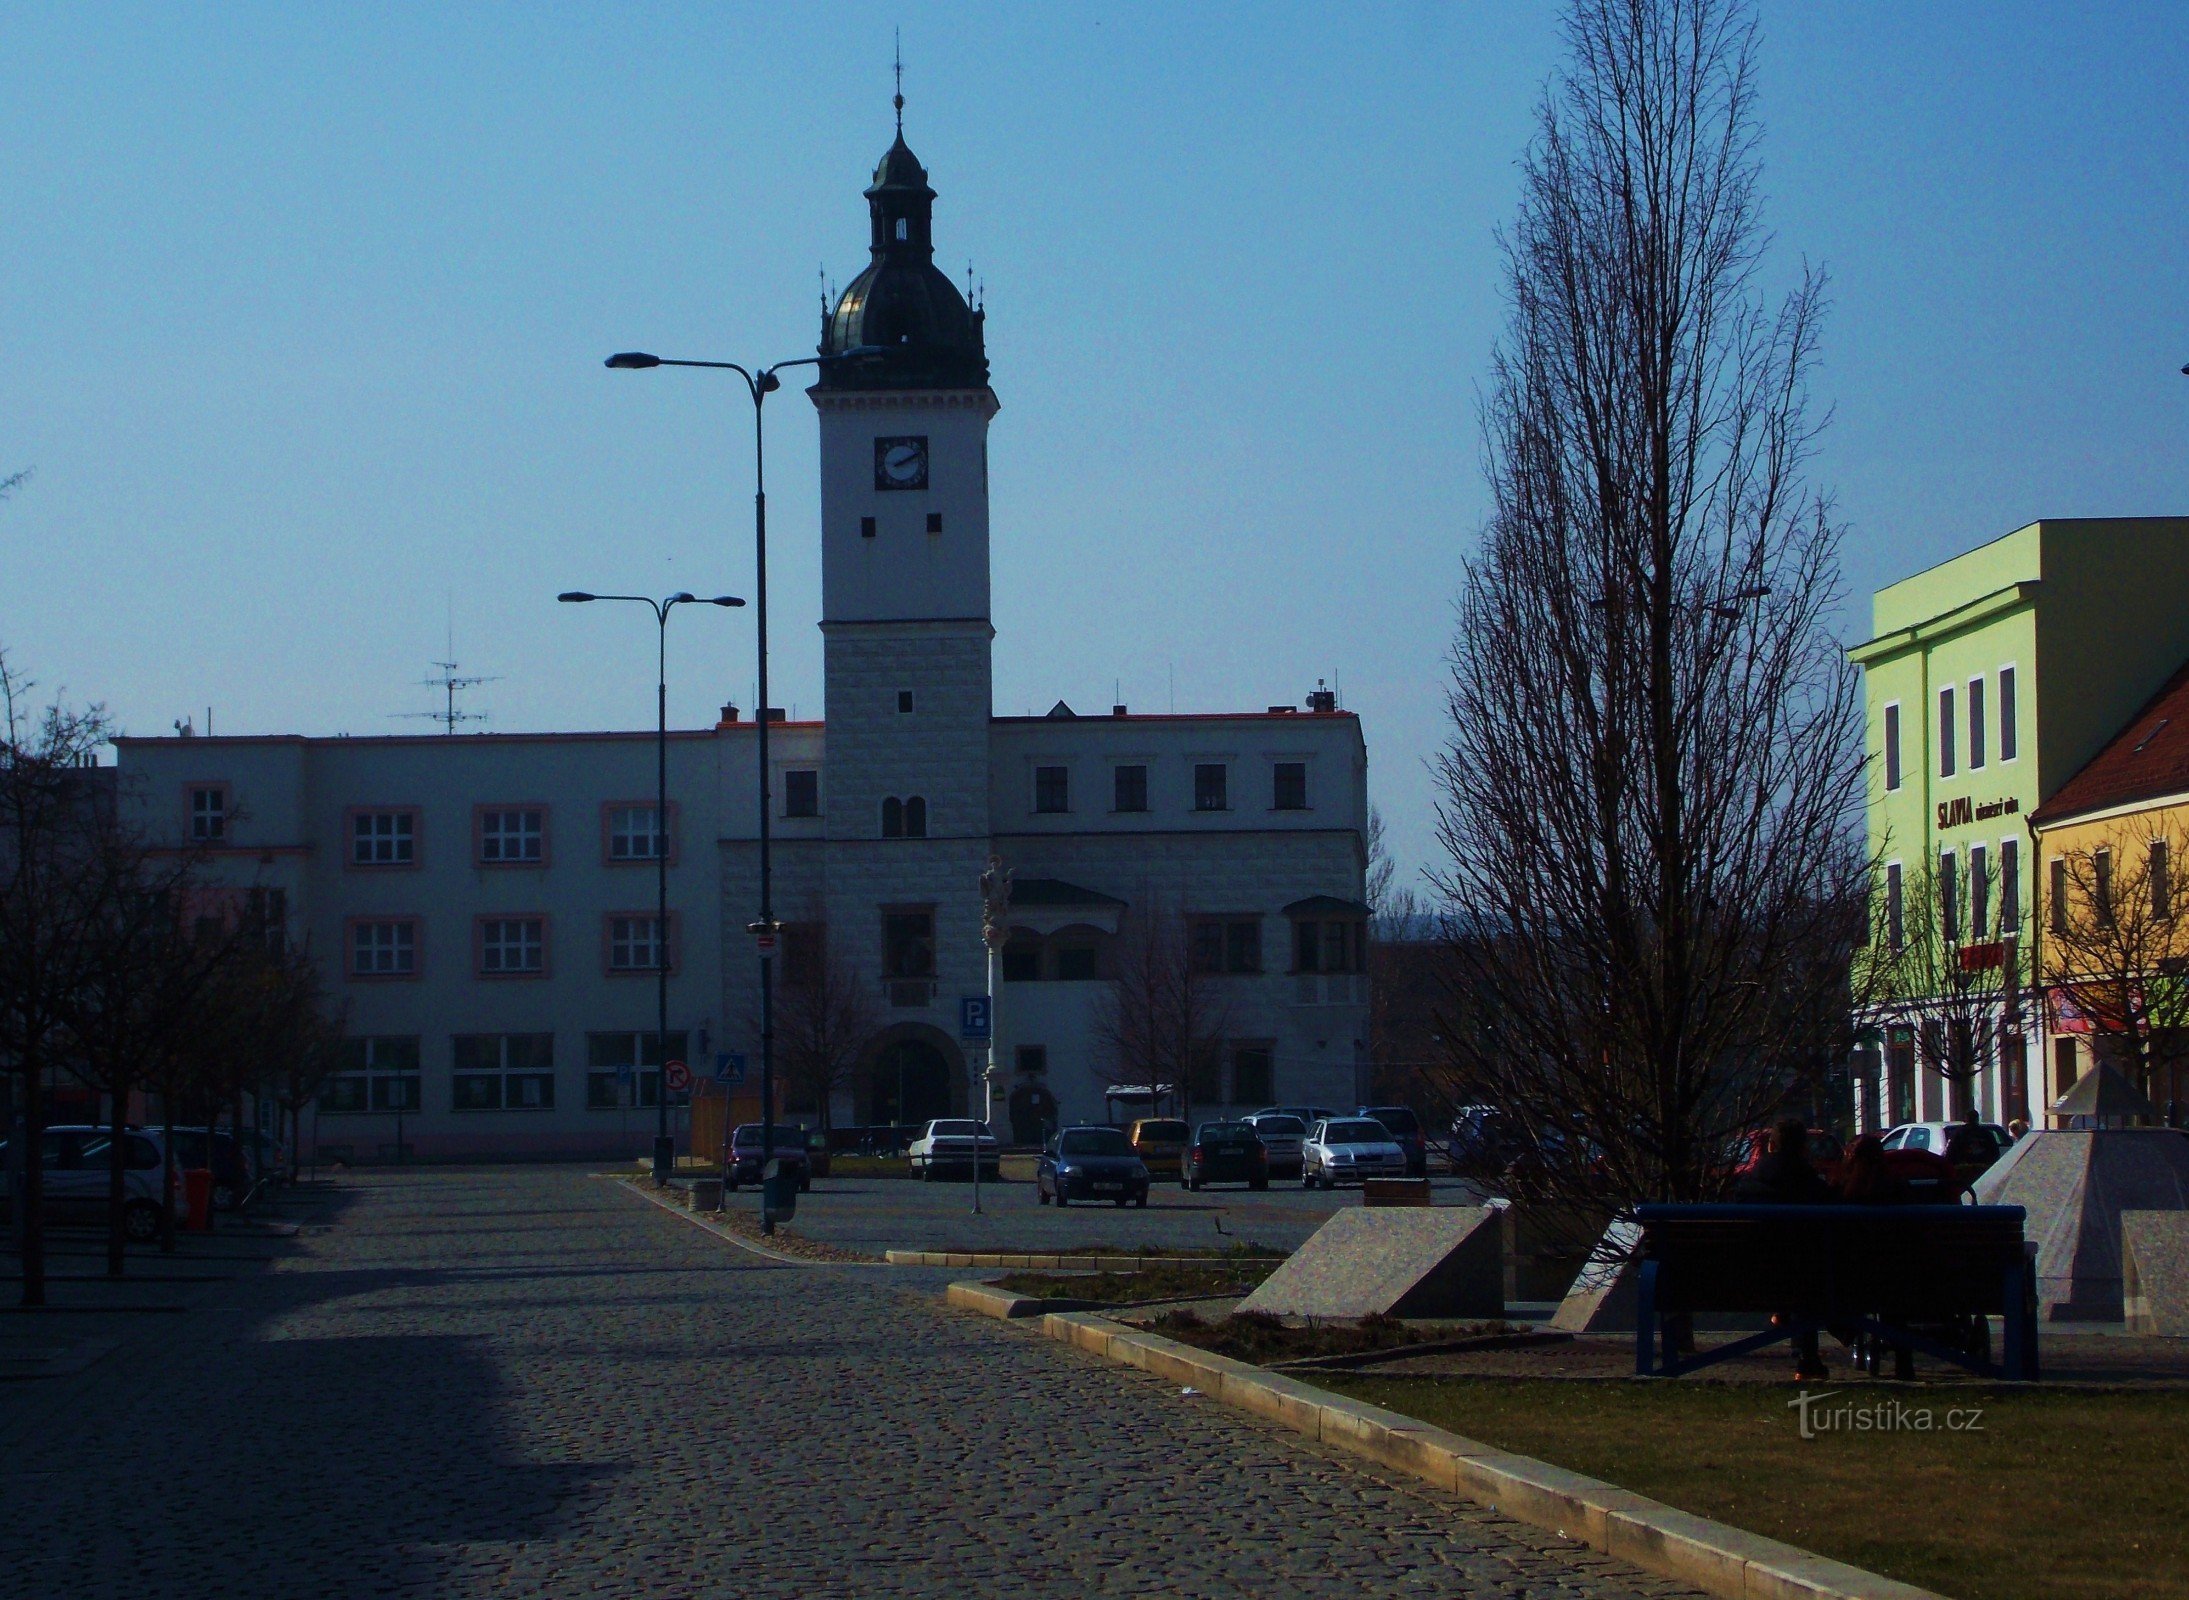 Hôtel de ville historique, monument de Kyjov